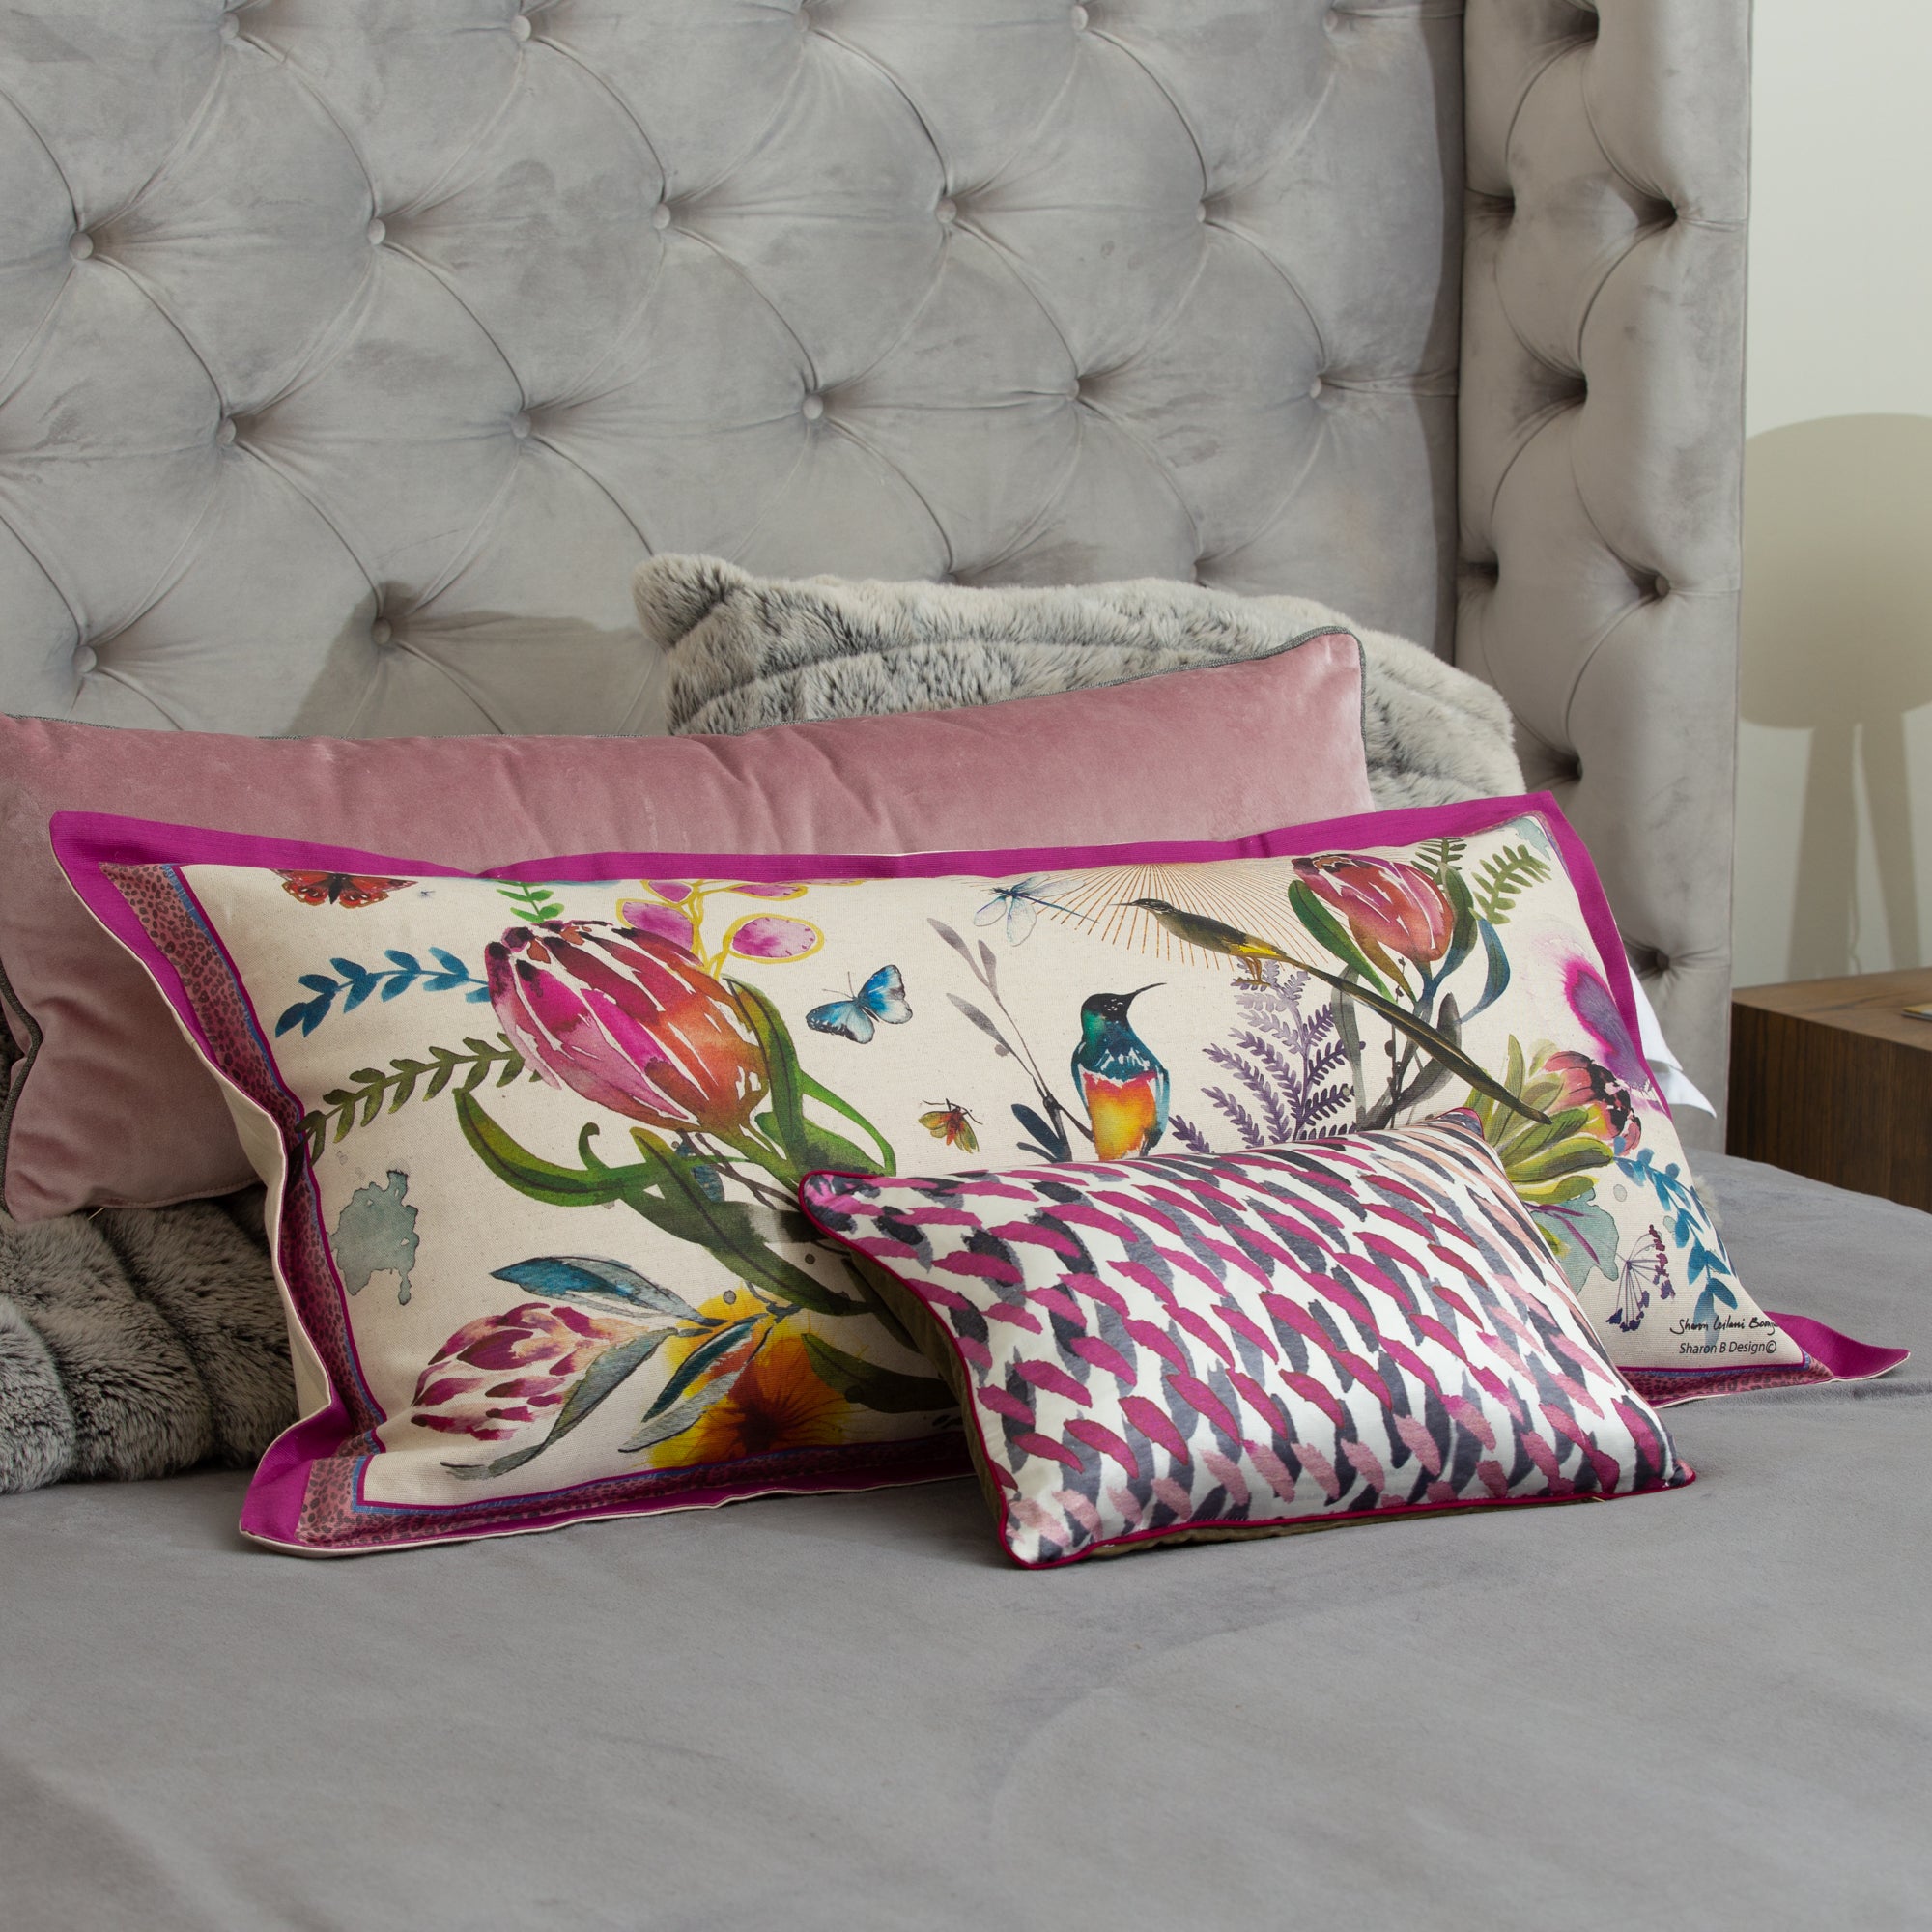 Colour Fynbos Cushion Cover, Large, Belgian Linen